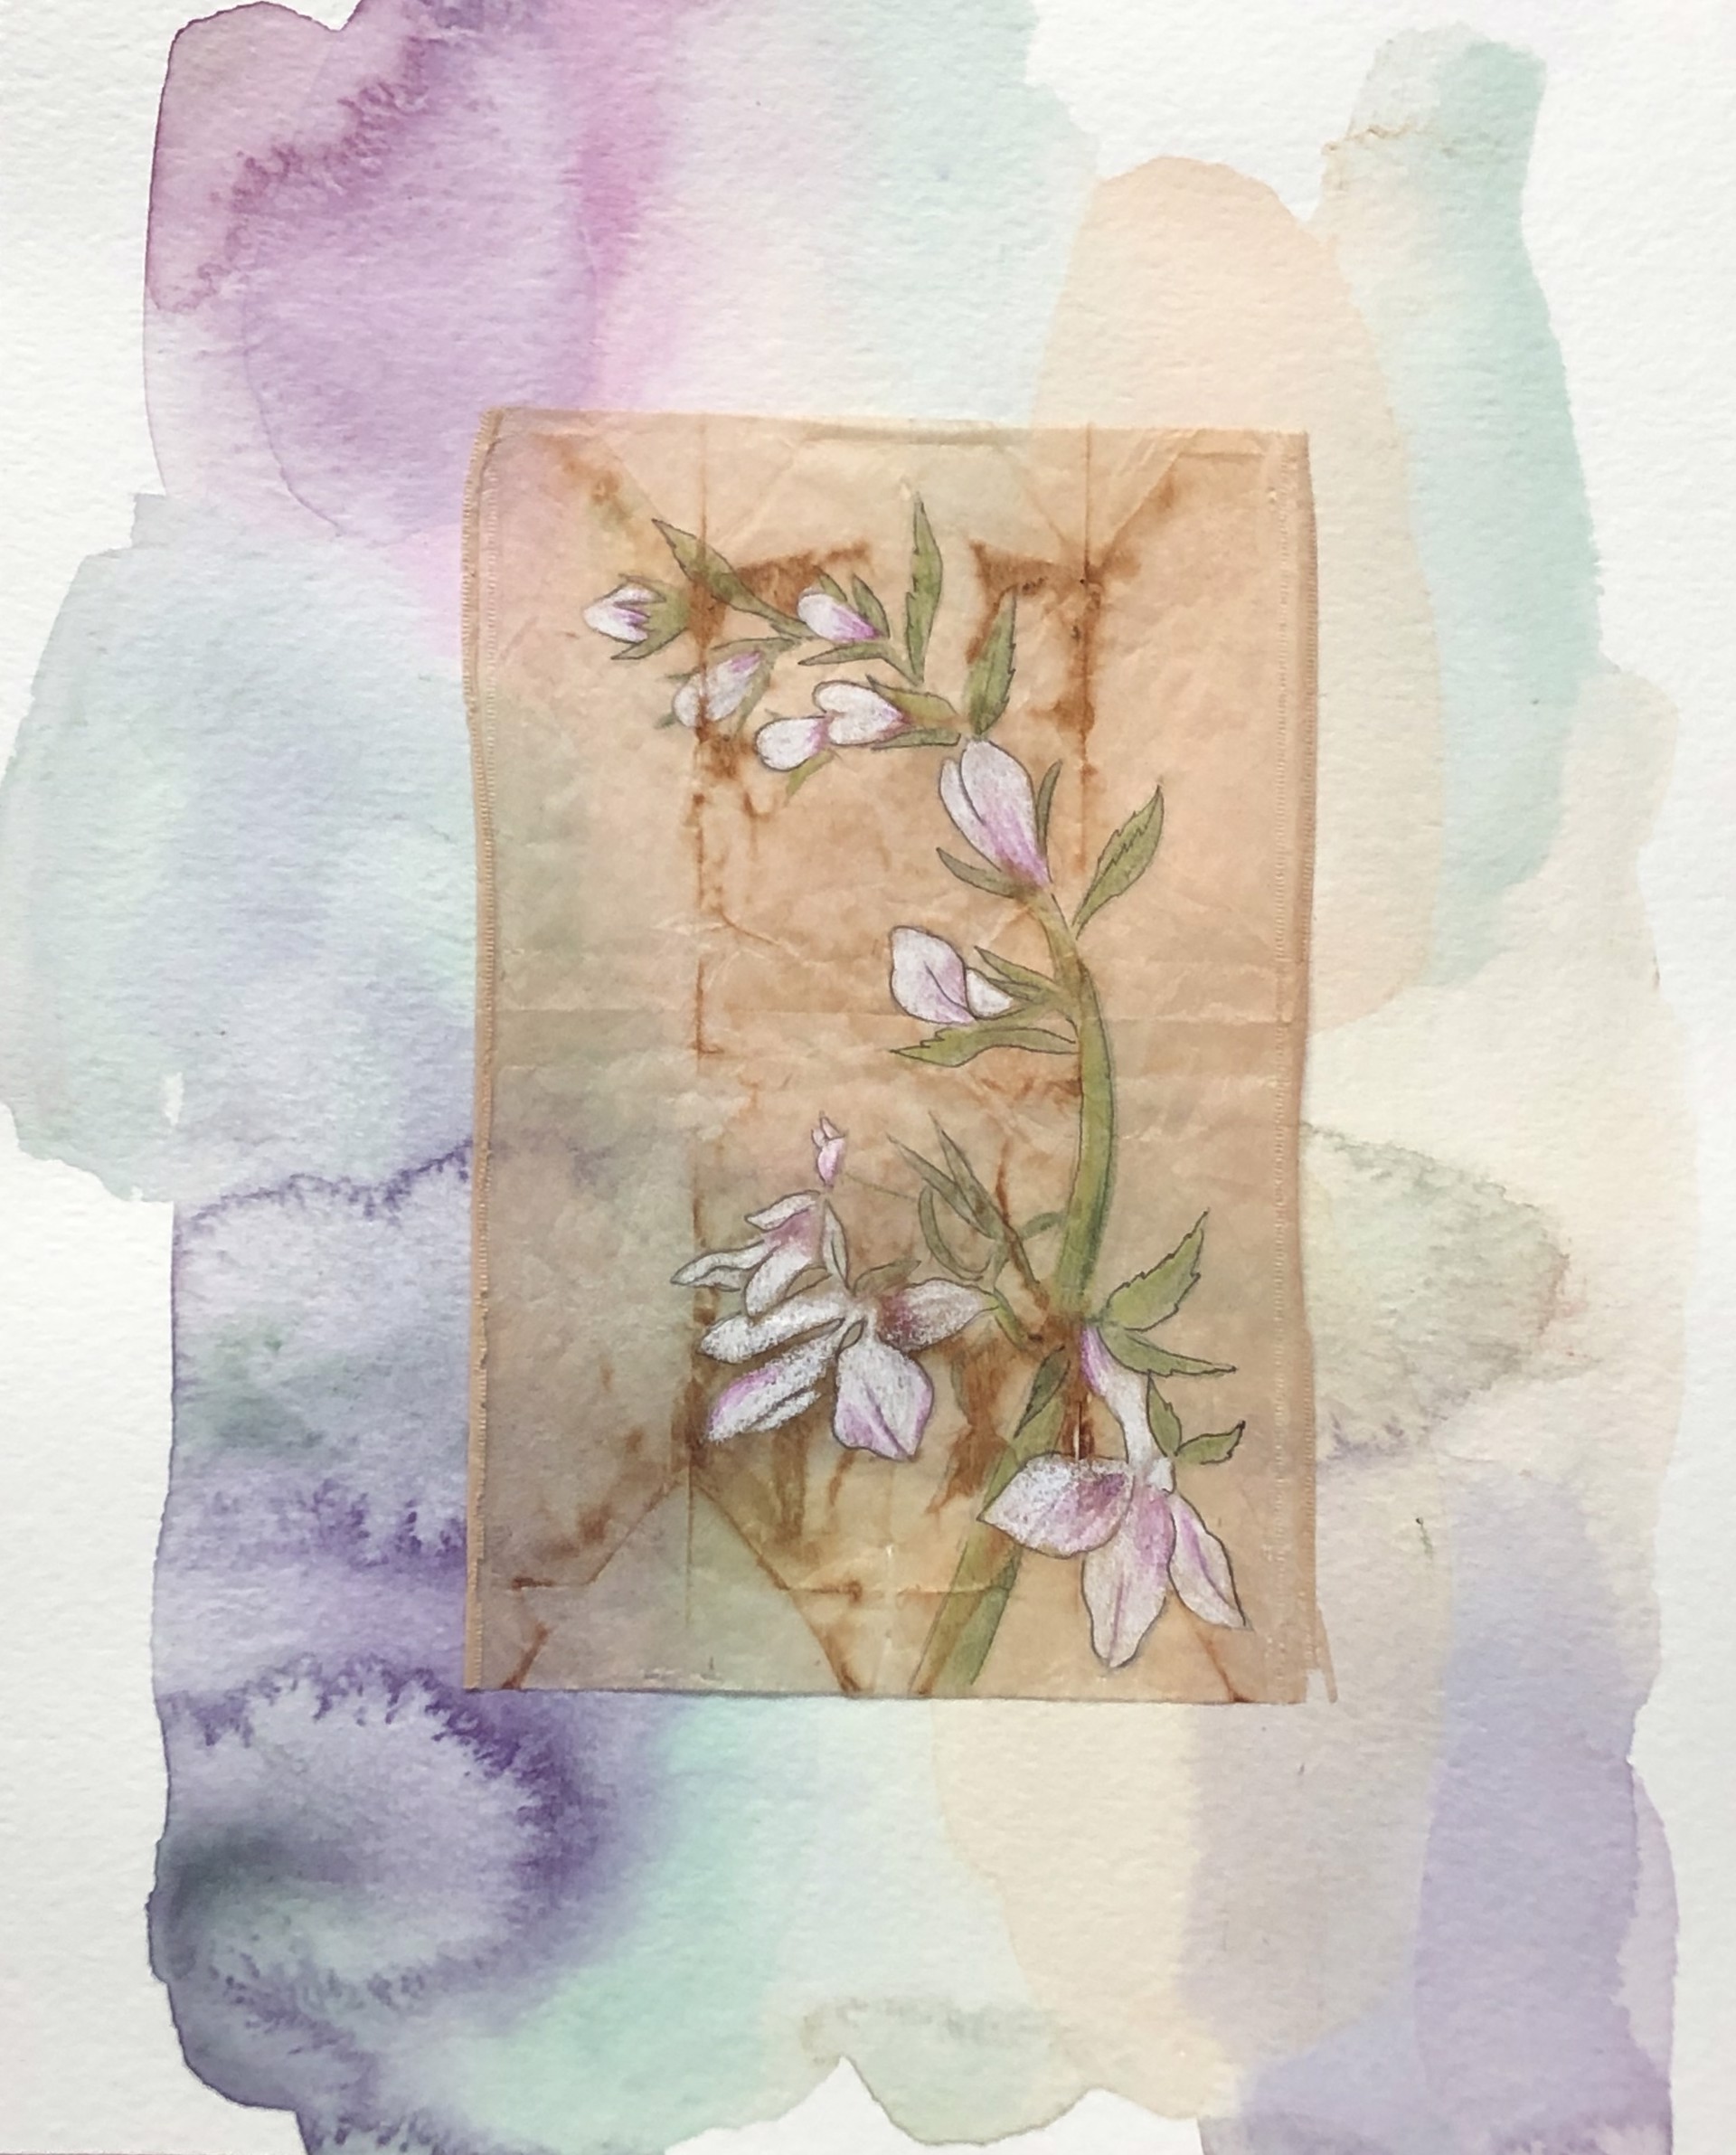 Wild Flowers by Shannon Deana Johnson